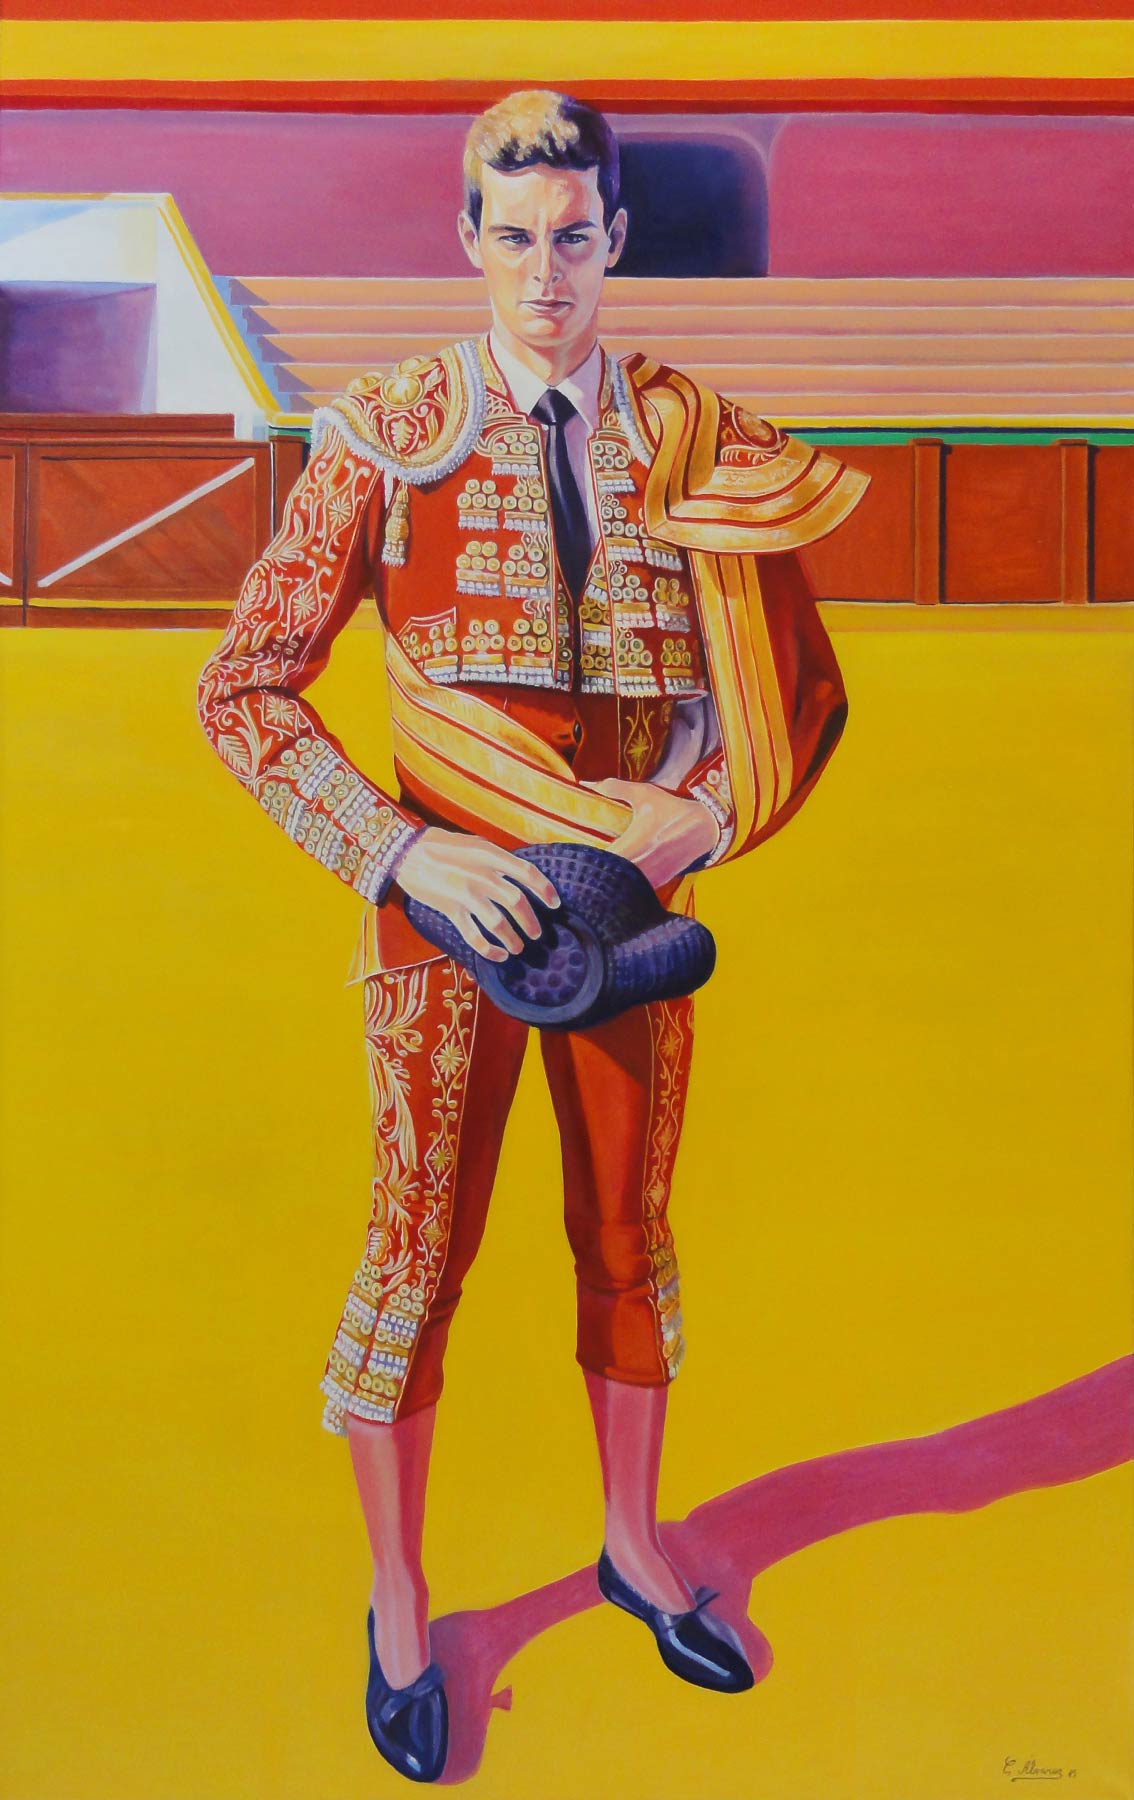 Torero de grana y oro. Year 2015. Oil on canvas. 160 x 100 cm-63¨x 39,4¨